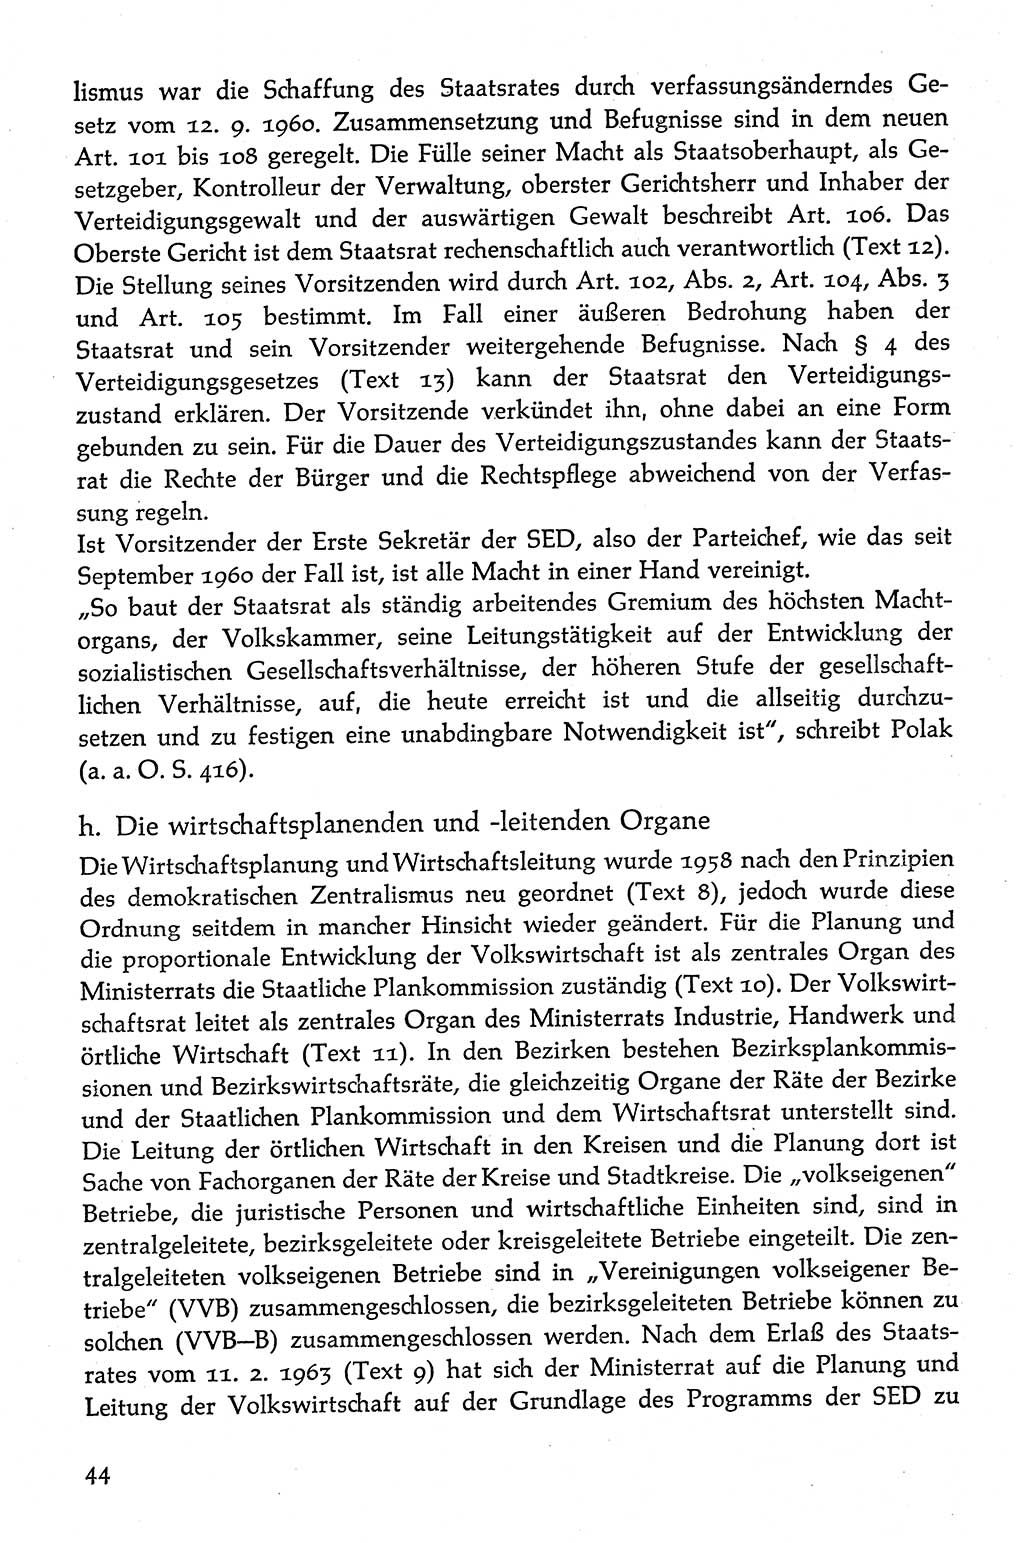 Volksdemokratische Ordnung in Mitteldeutschland [Deutsche Demokratische Republik (DDR)], Texte zur verfassungsrechtlichen Situation 1963, Seite 44 (Volksdem. Ordn. Md. DDR 1963, S. 44)